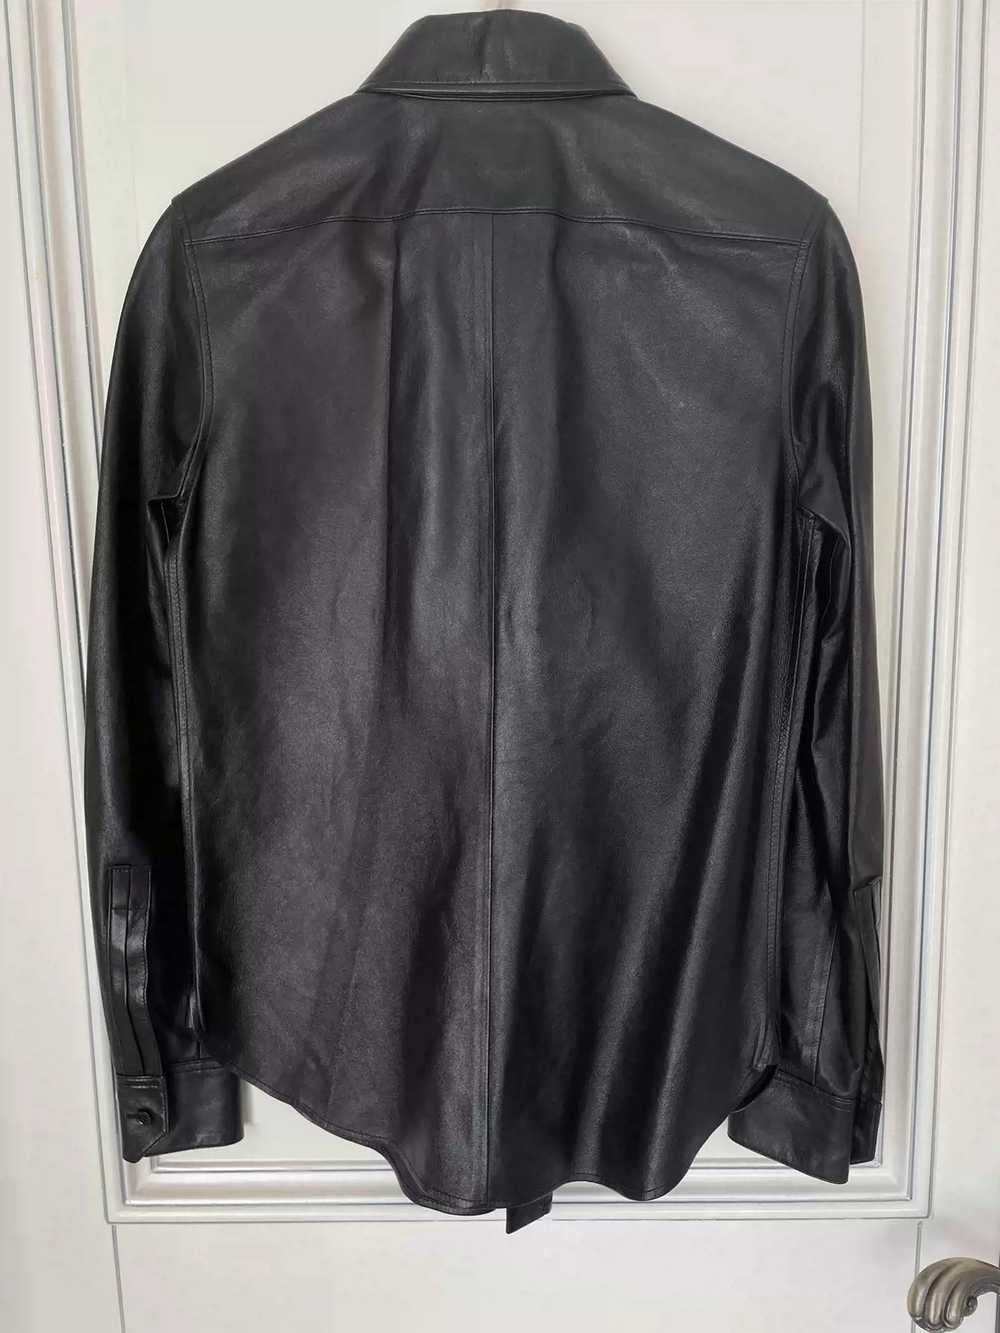 Yves Saint Laurent Saint Laurent Leather Shirt - image 2